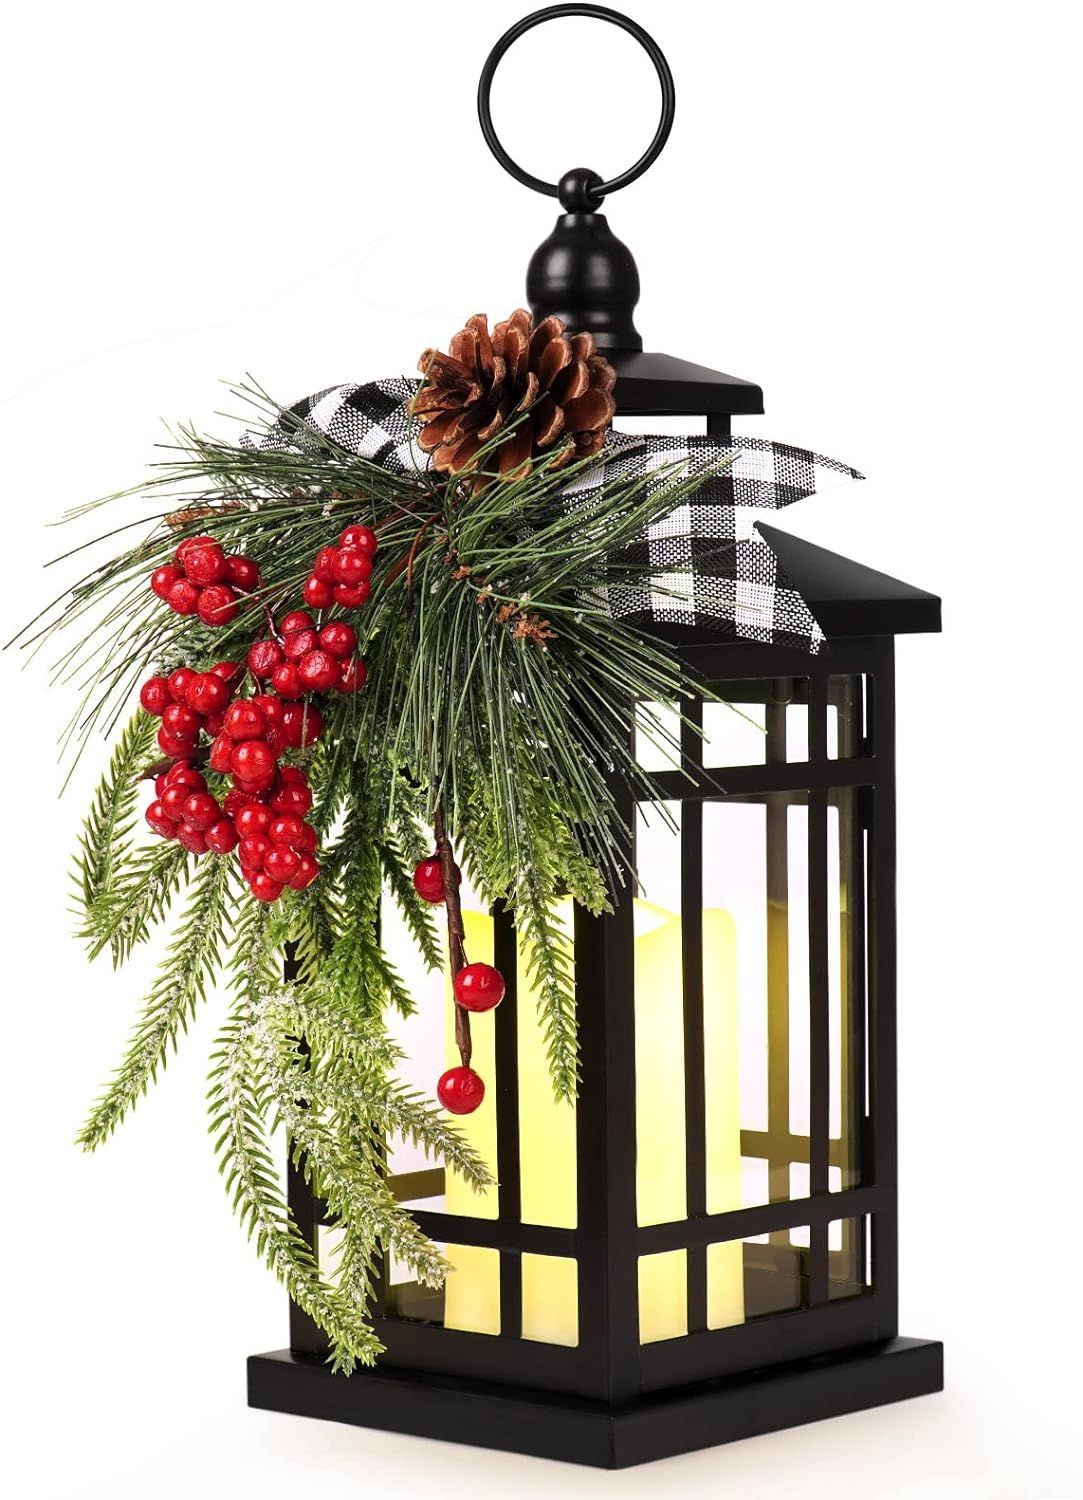 WOKEISE Metal Christmas Vintage Candle Lanterns with Led Light,Plaid Ribbon Decorative Hanging La... | Amazon (US)